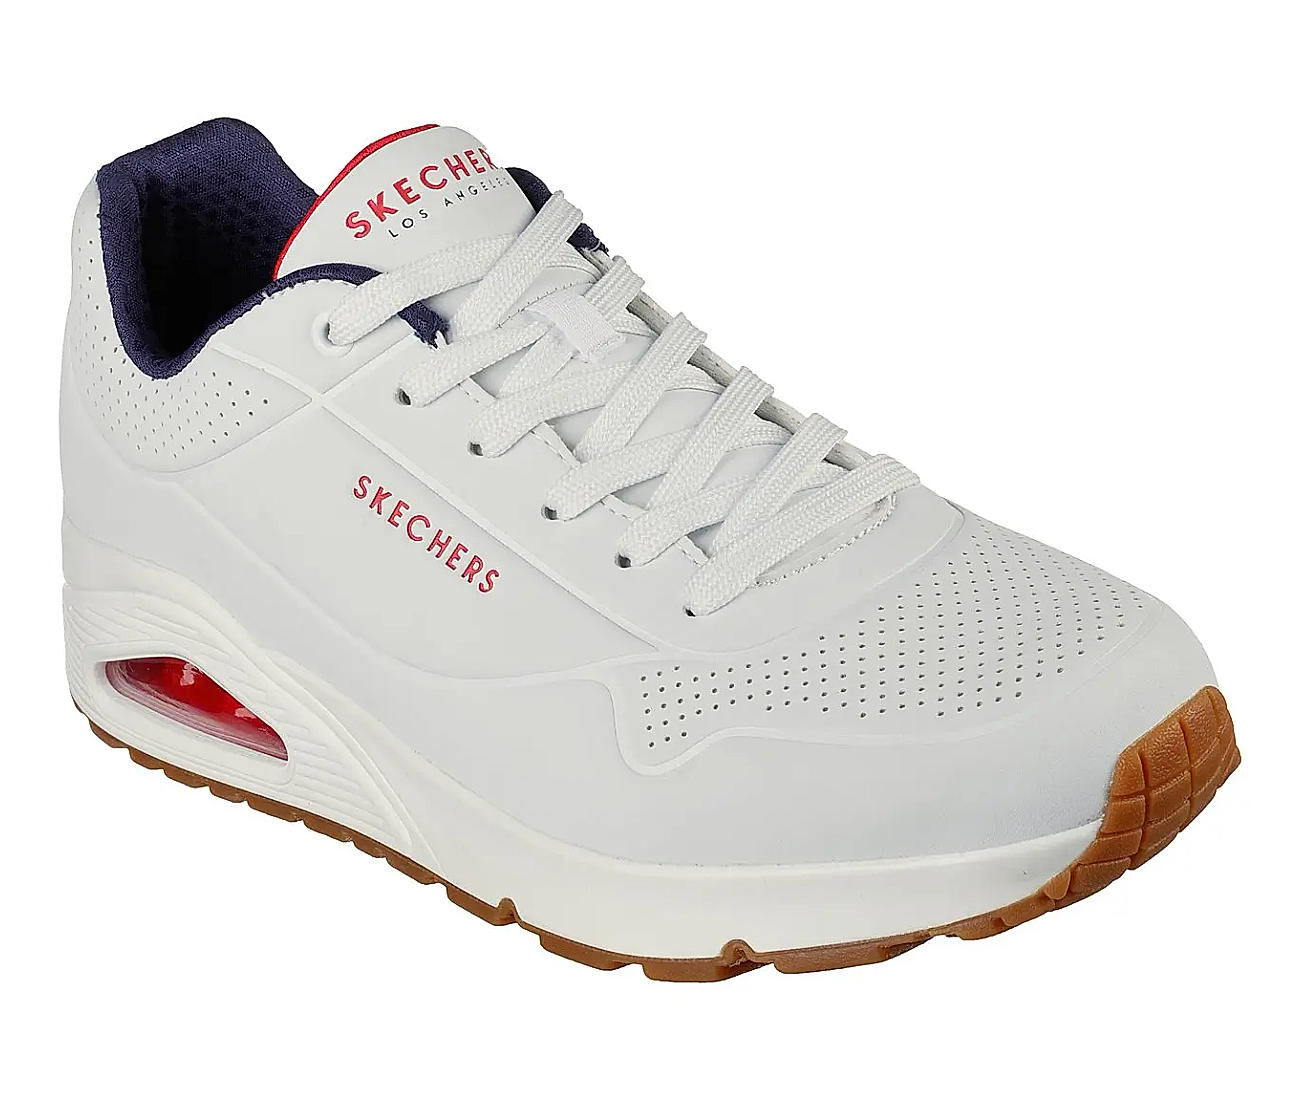 Skechers VENICE-T Sneakers For Men - Buy Skechers VENICE-T Sneakers For Men  Online at Best Price - Shop Online for Footwears in India | Flipkart.com